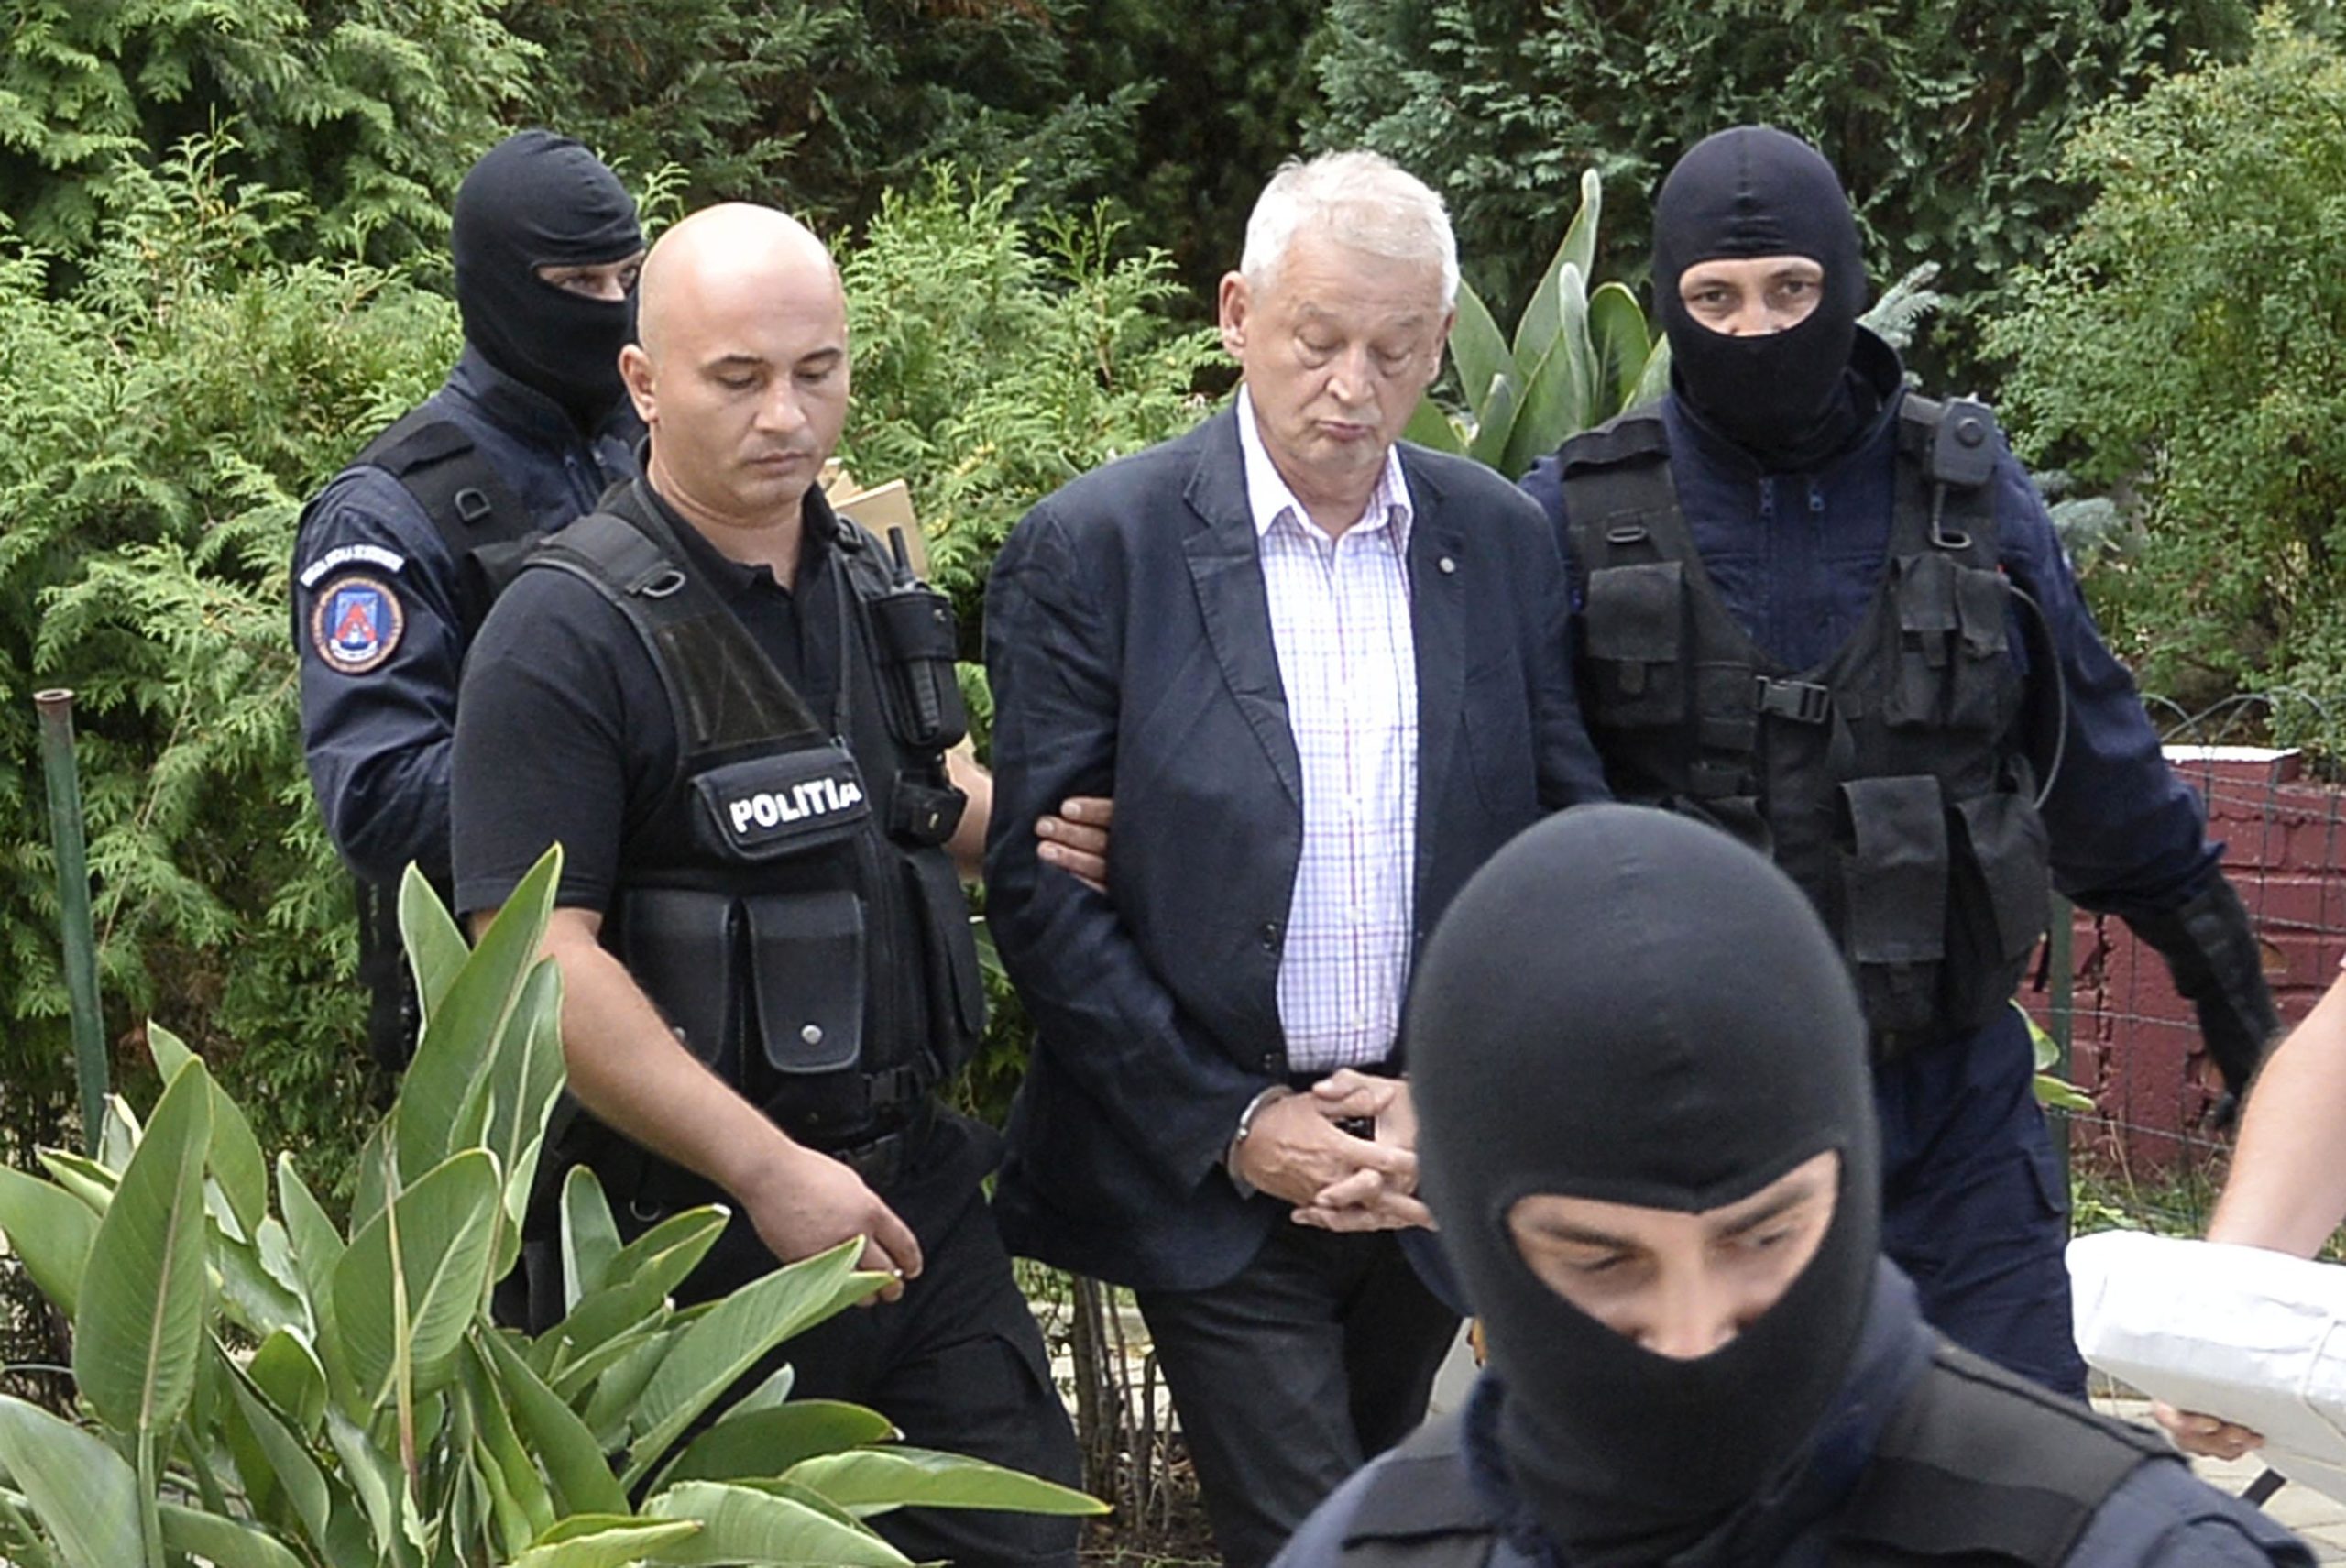 Fostul primar al Capitalei Sorin Oprescu a fost prins în Grecia după ce a fugit din țară. După ce a fost prins, Oprescu a fost dus în arest și eliberat pe cauțiune, în 31 mai